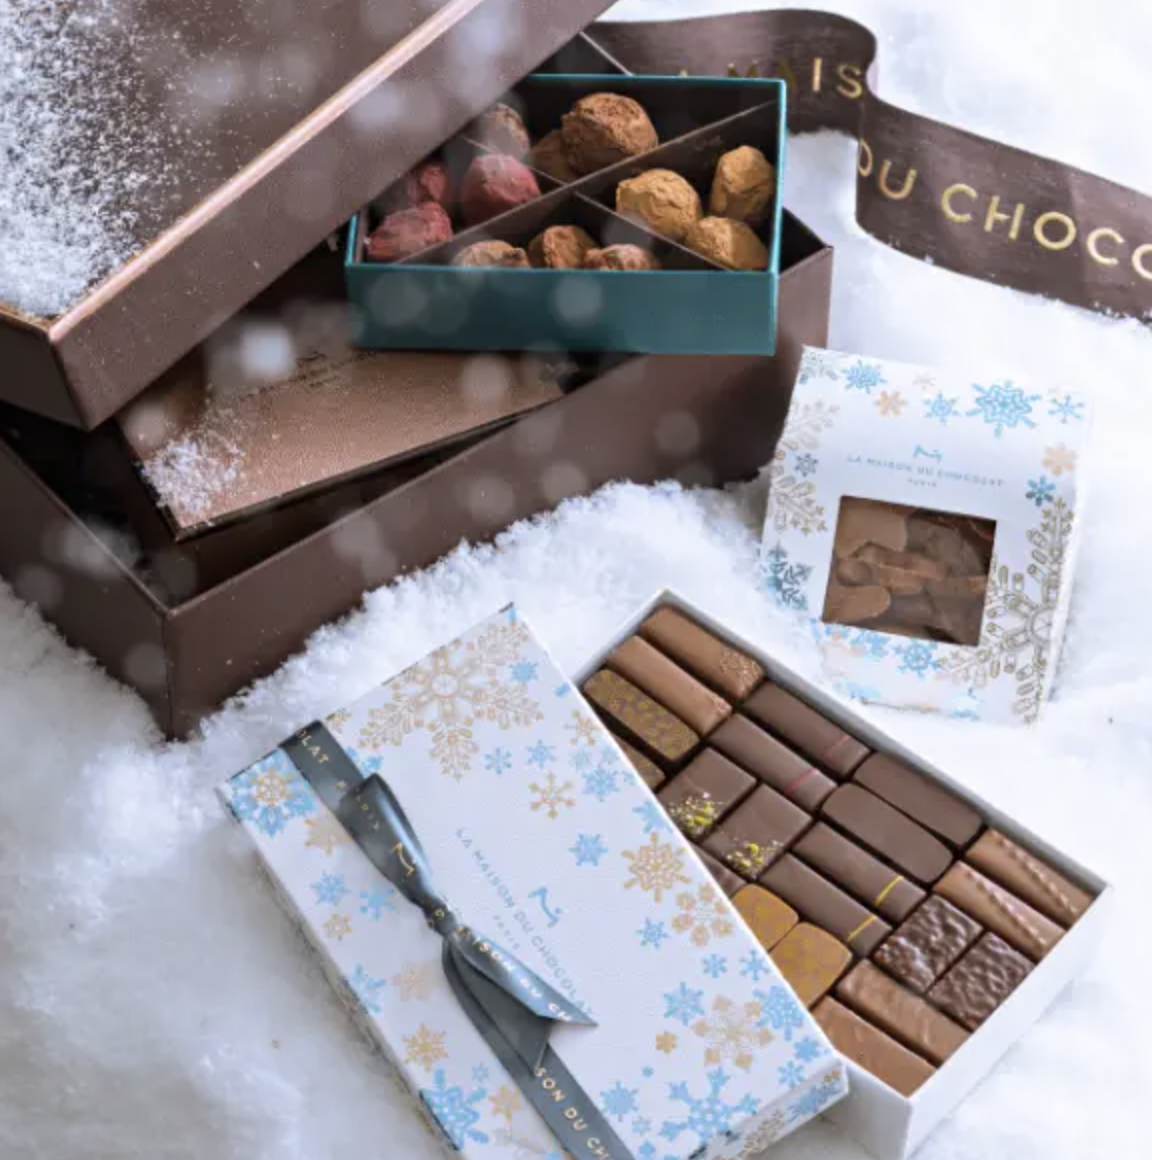 La Maison Du Chocolat boxes opened up to show treats.